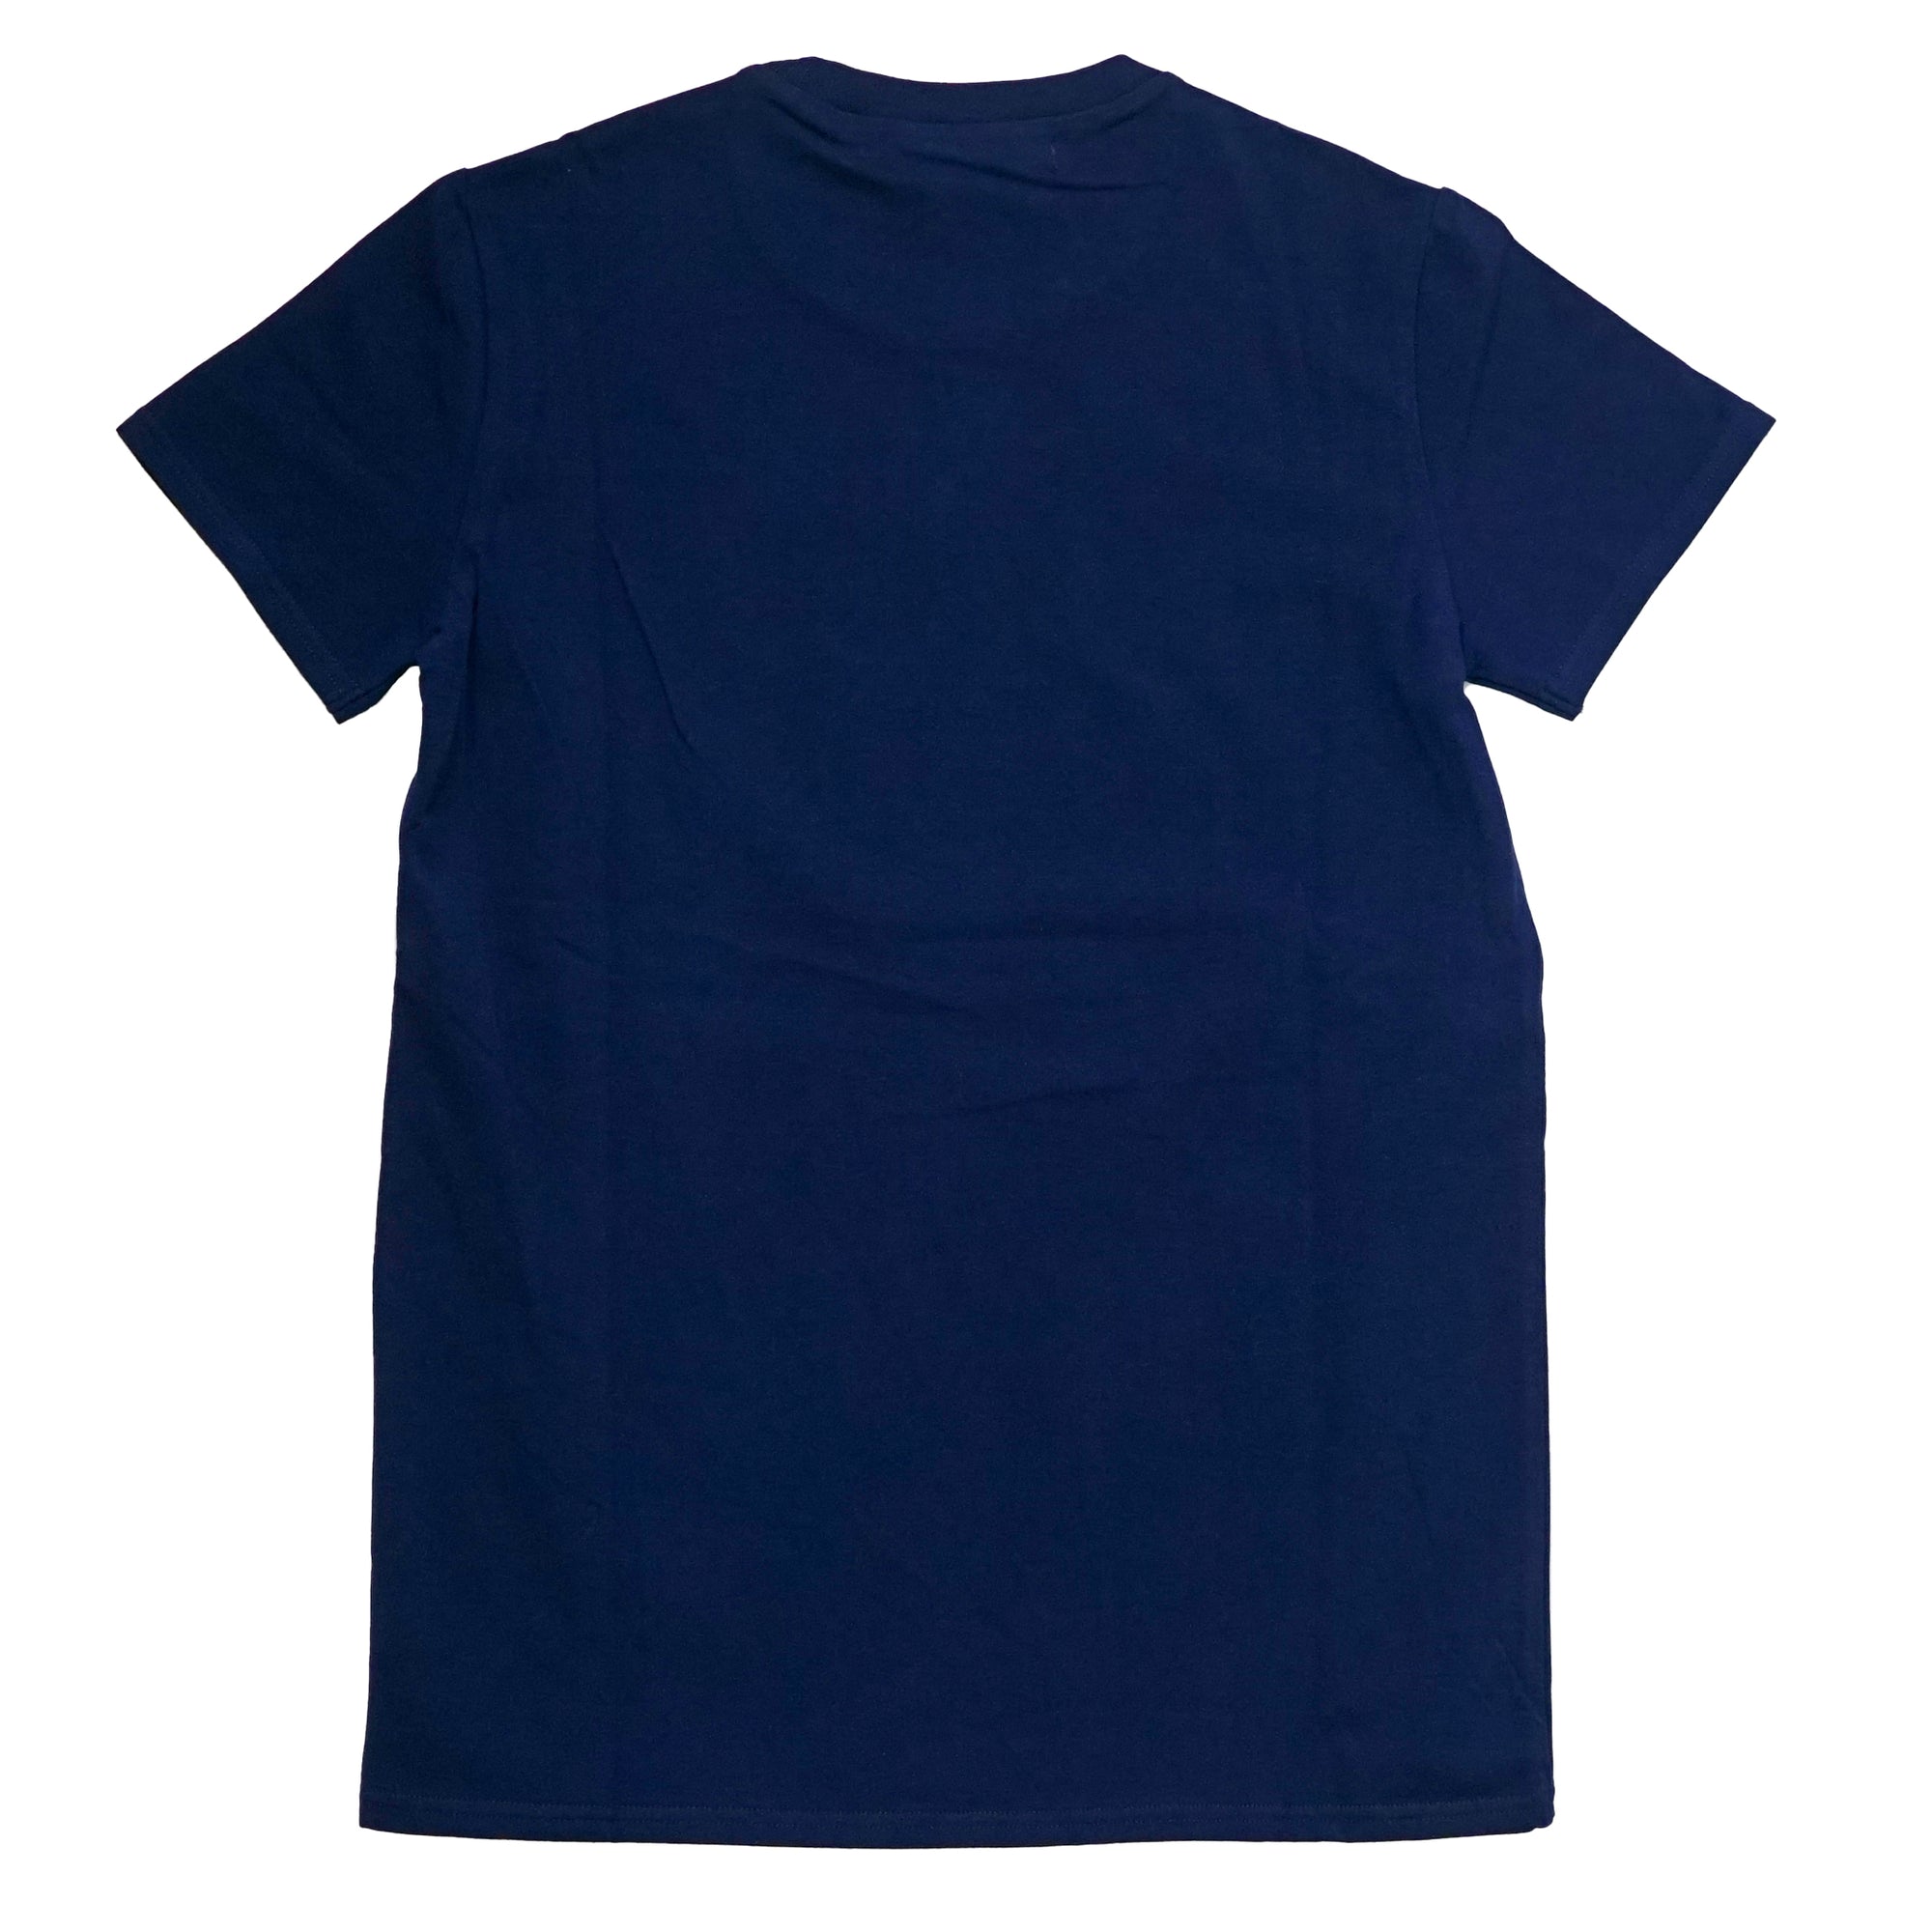 (40%オフ! セール商品)ASIANZ HEAD2 × AXF クルーネックシンプルロゴ 半袖Tシャツ キッズウェアー